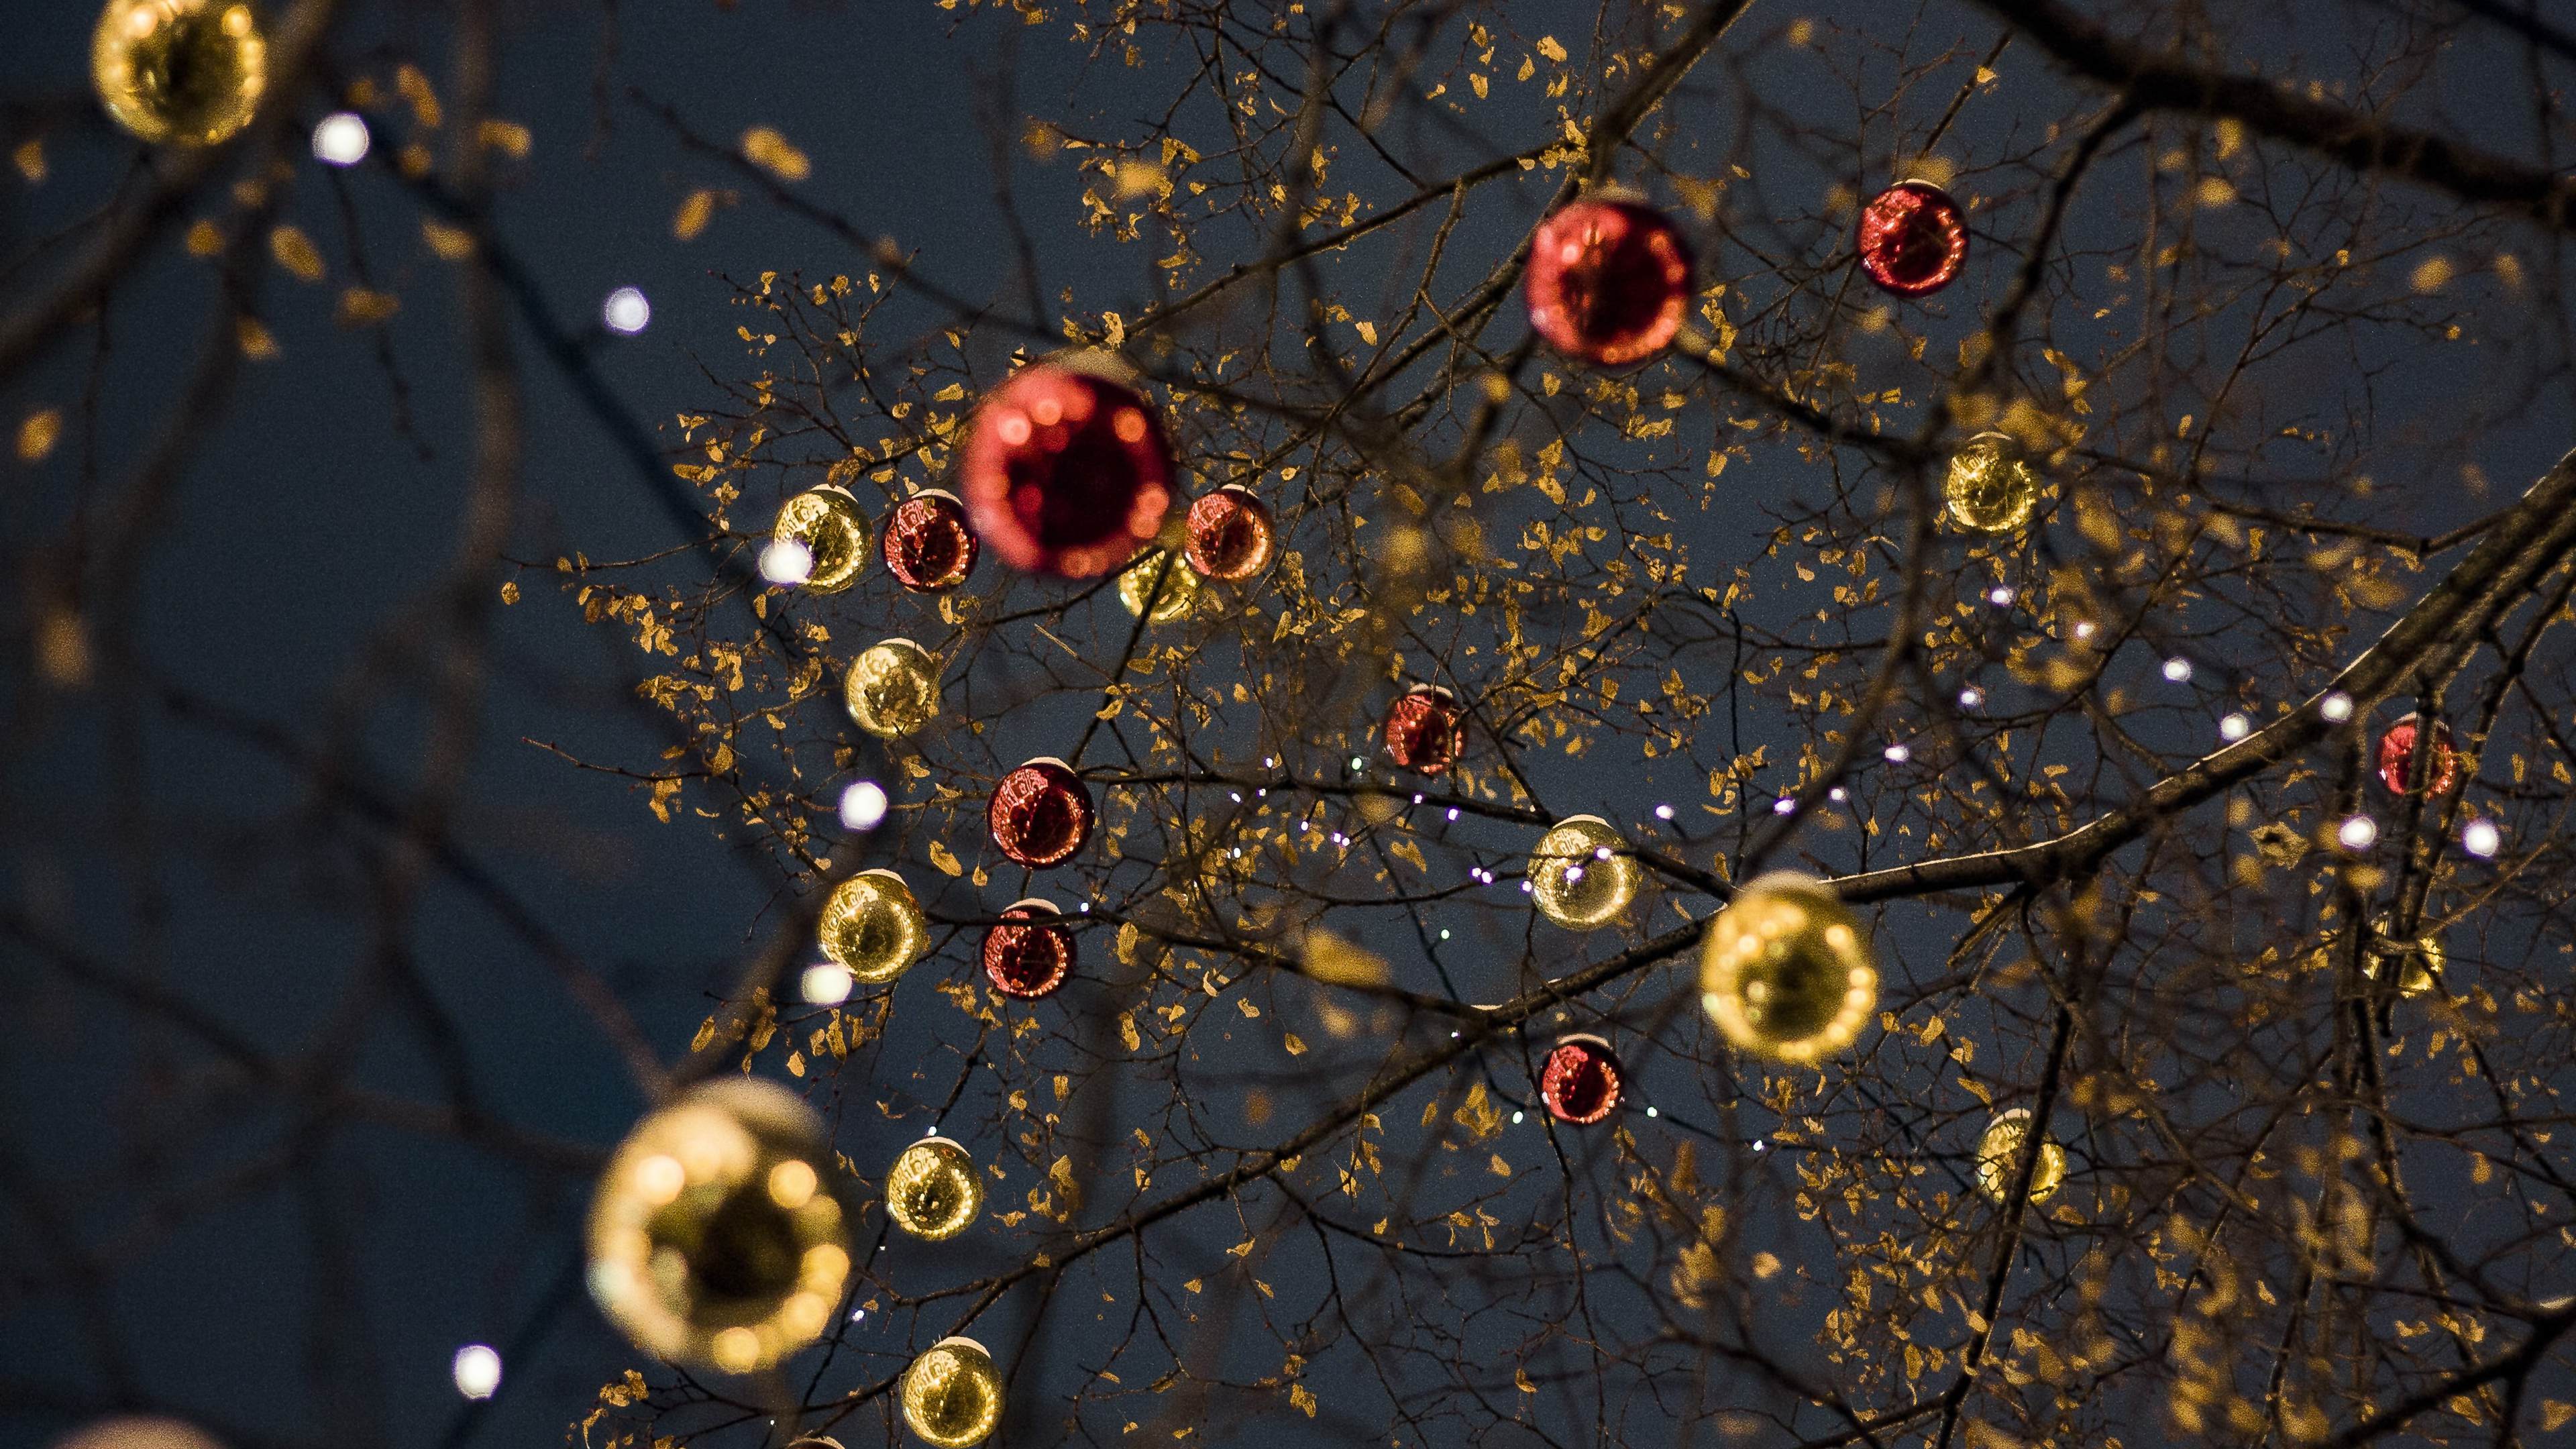 十二月 <span style='color:red;'>圣诞节</span>庆典树 灯 球等装饰物唯美壁纸图片 烘托气氛的